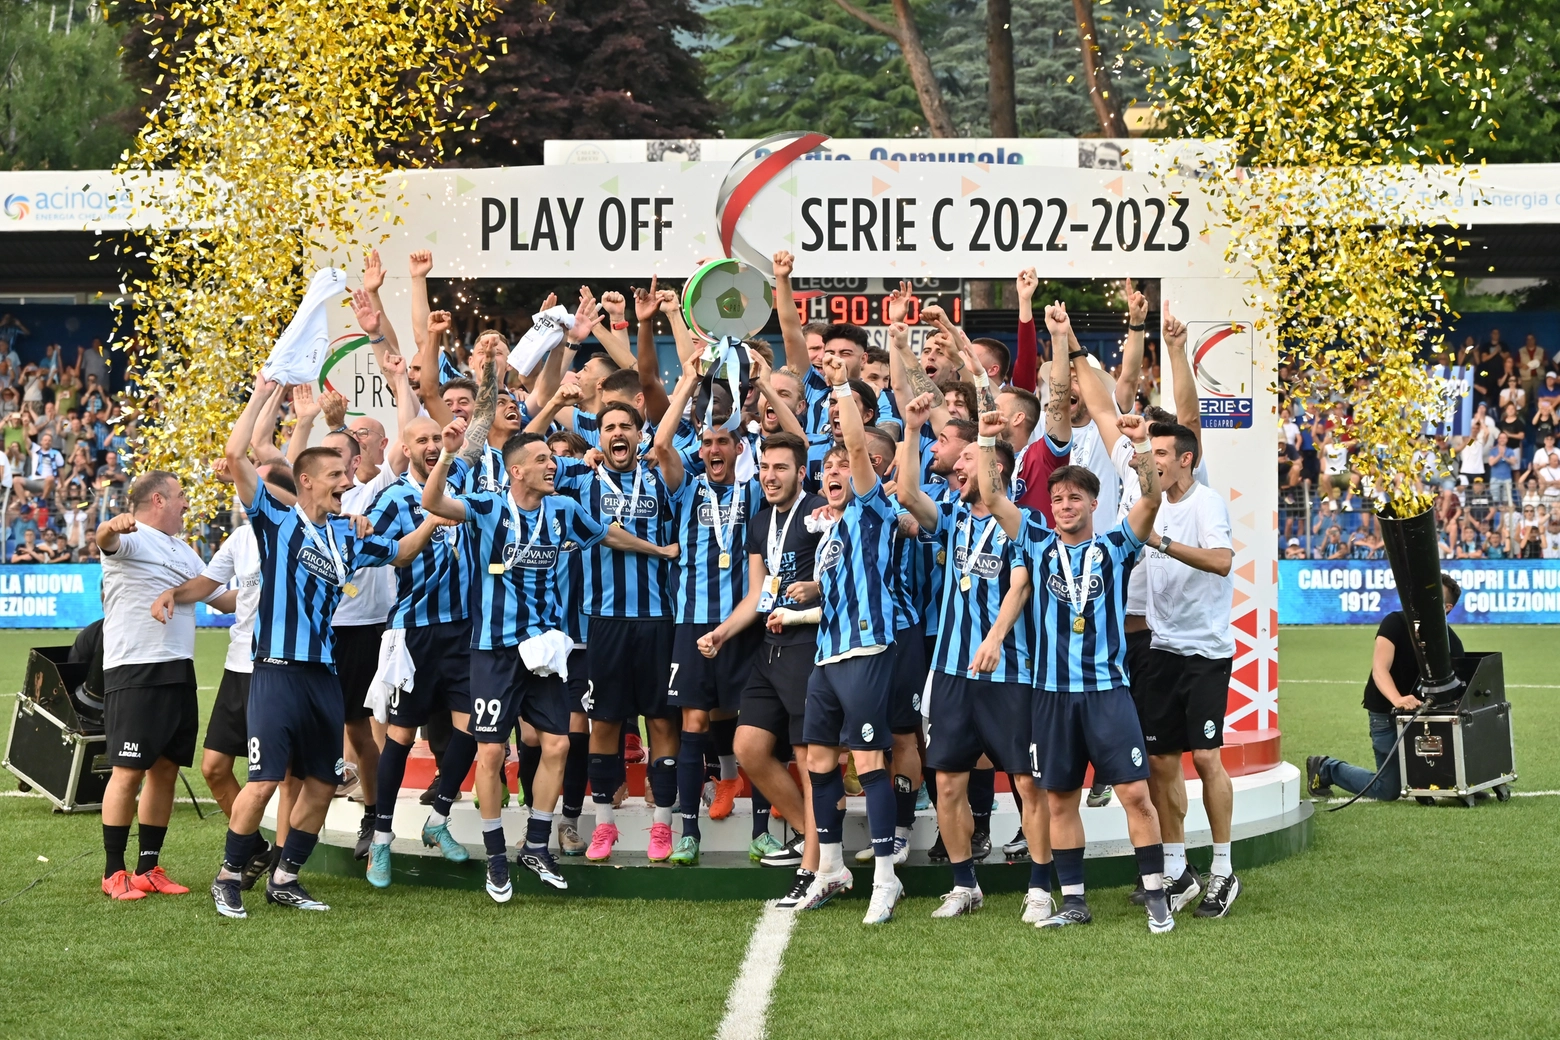 La squadra festeggia la promozione in serie B allo stadio Rigamonti-Ceppi